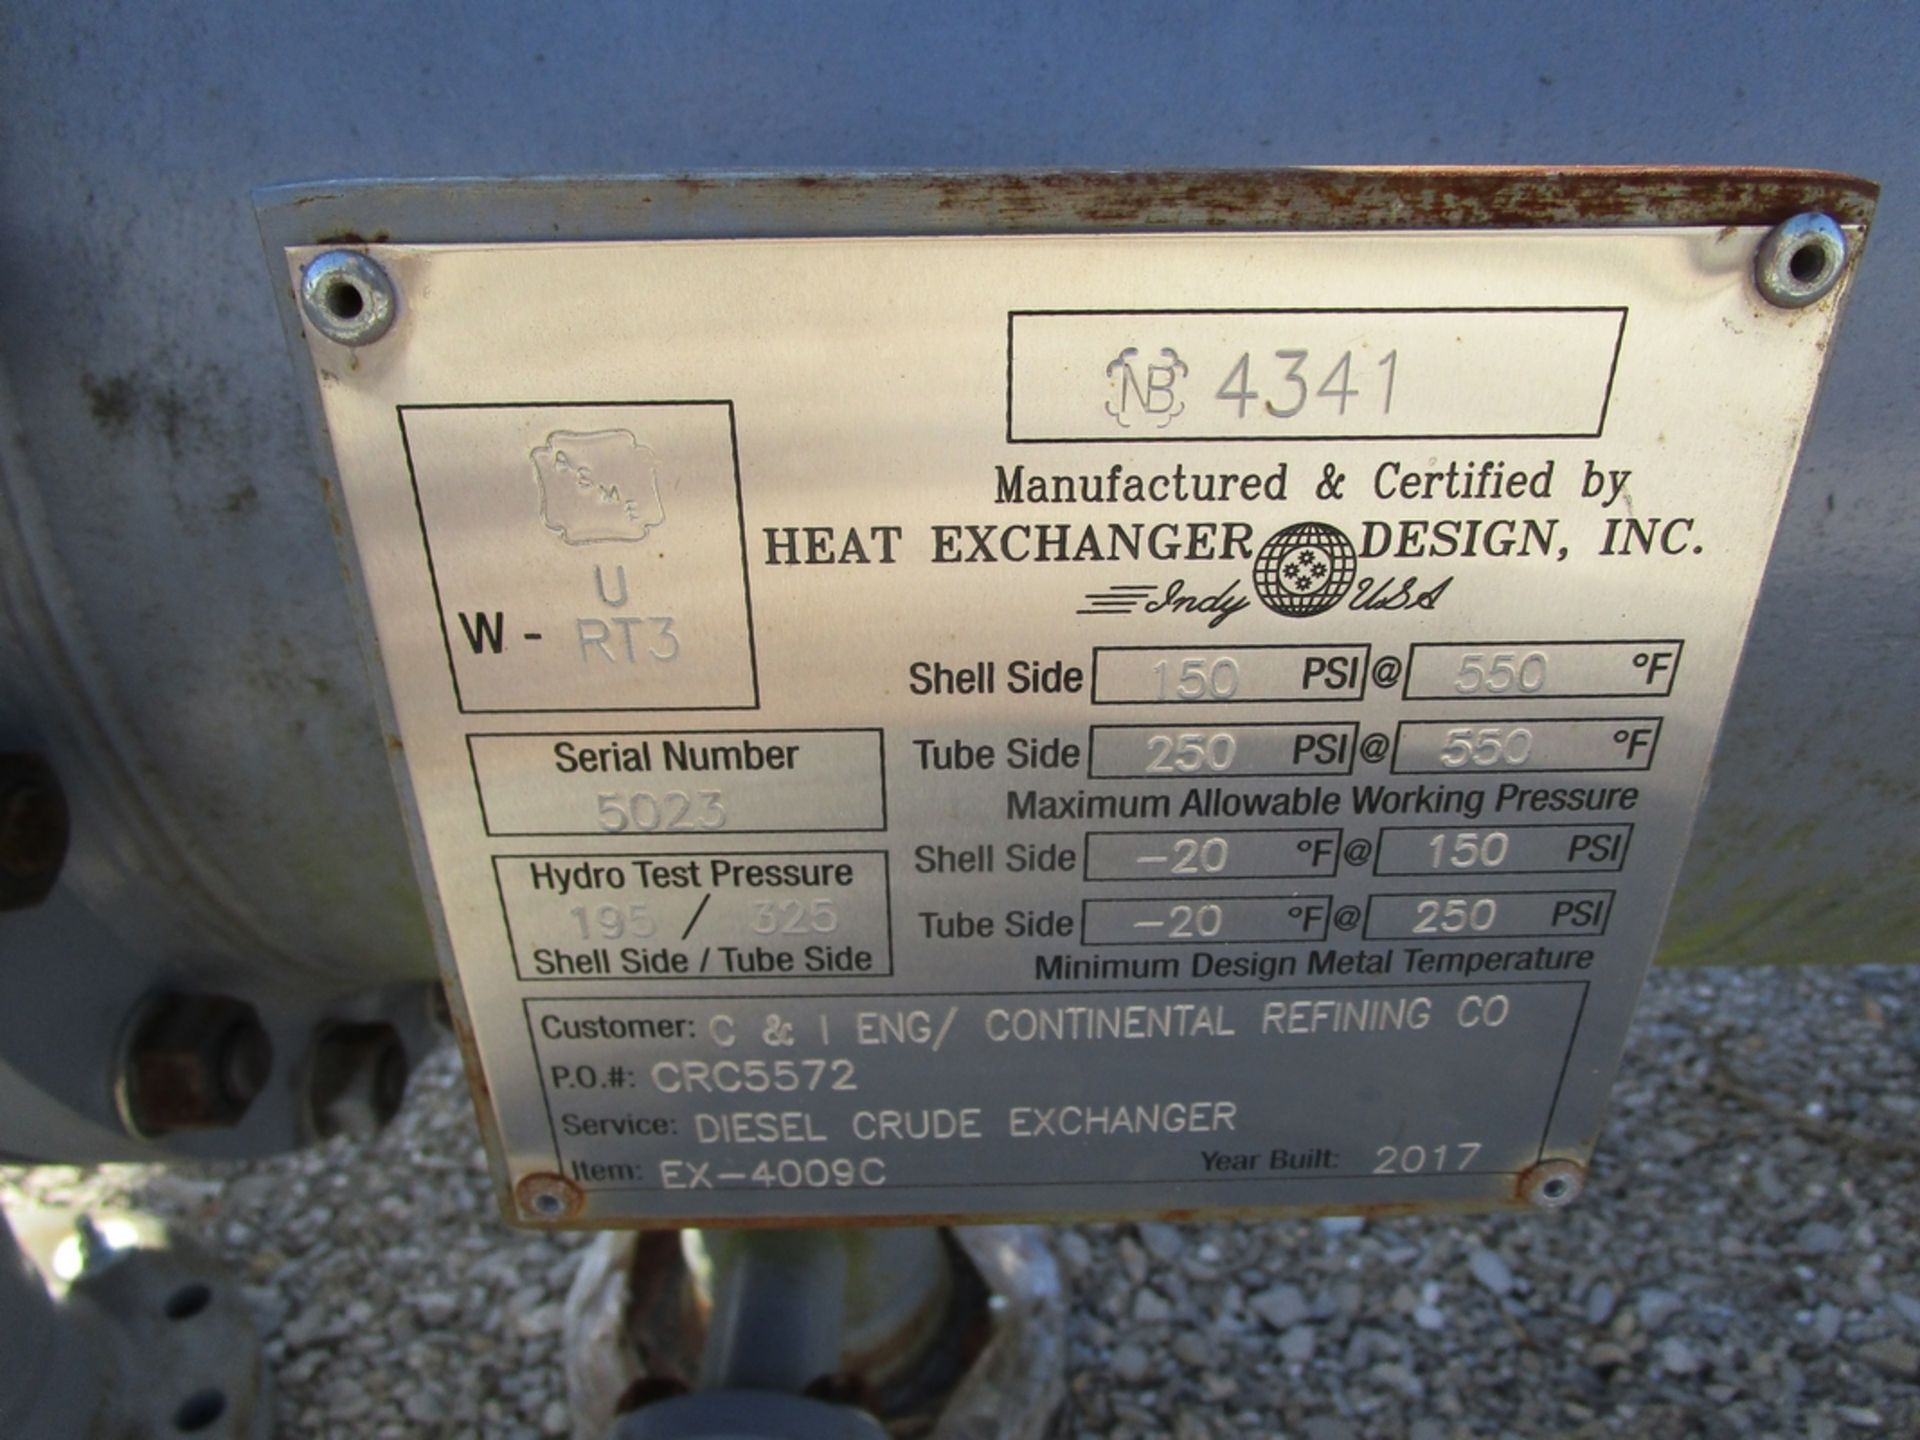 Heat Exchanger Design Diesel Crude Exchanger - Image 2 of 3